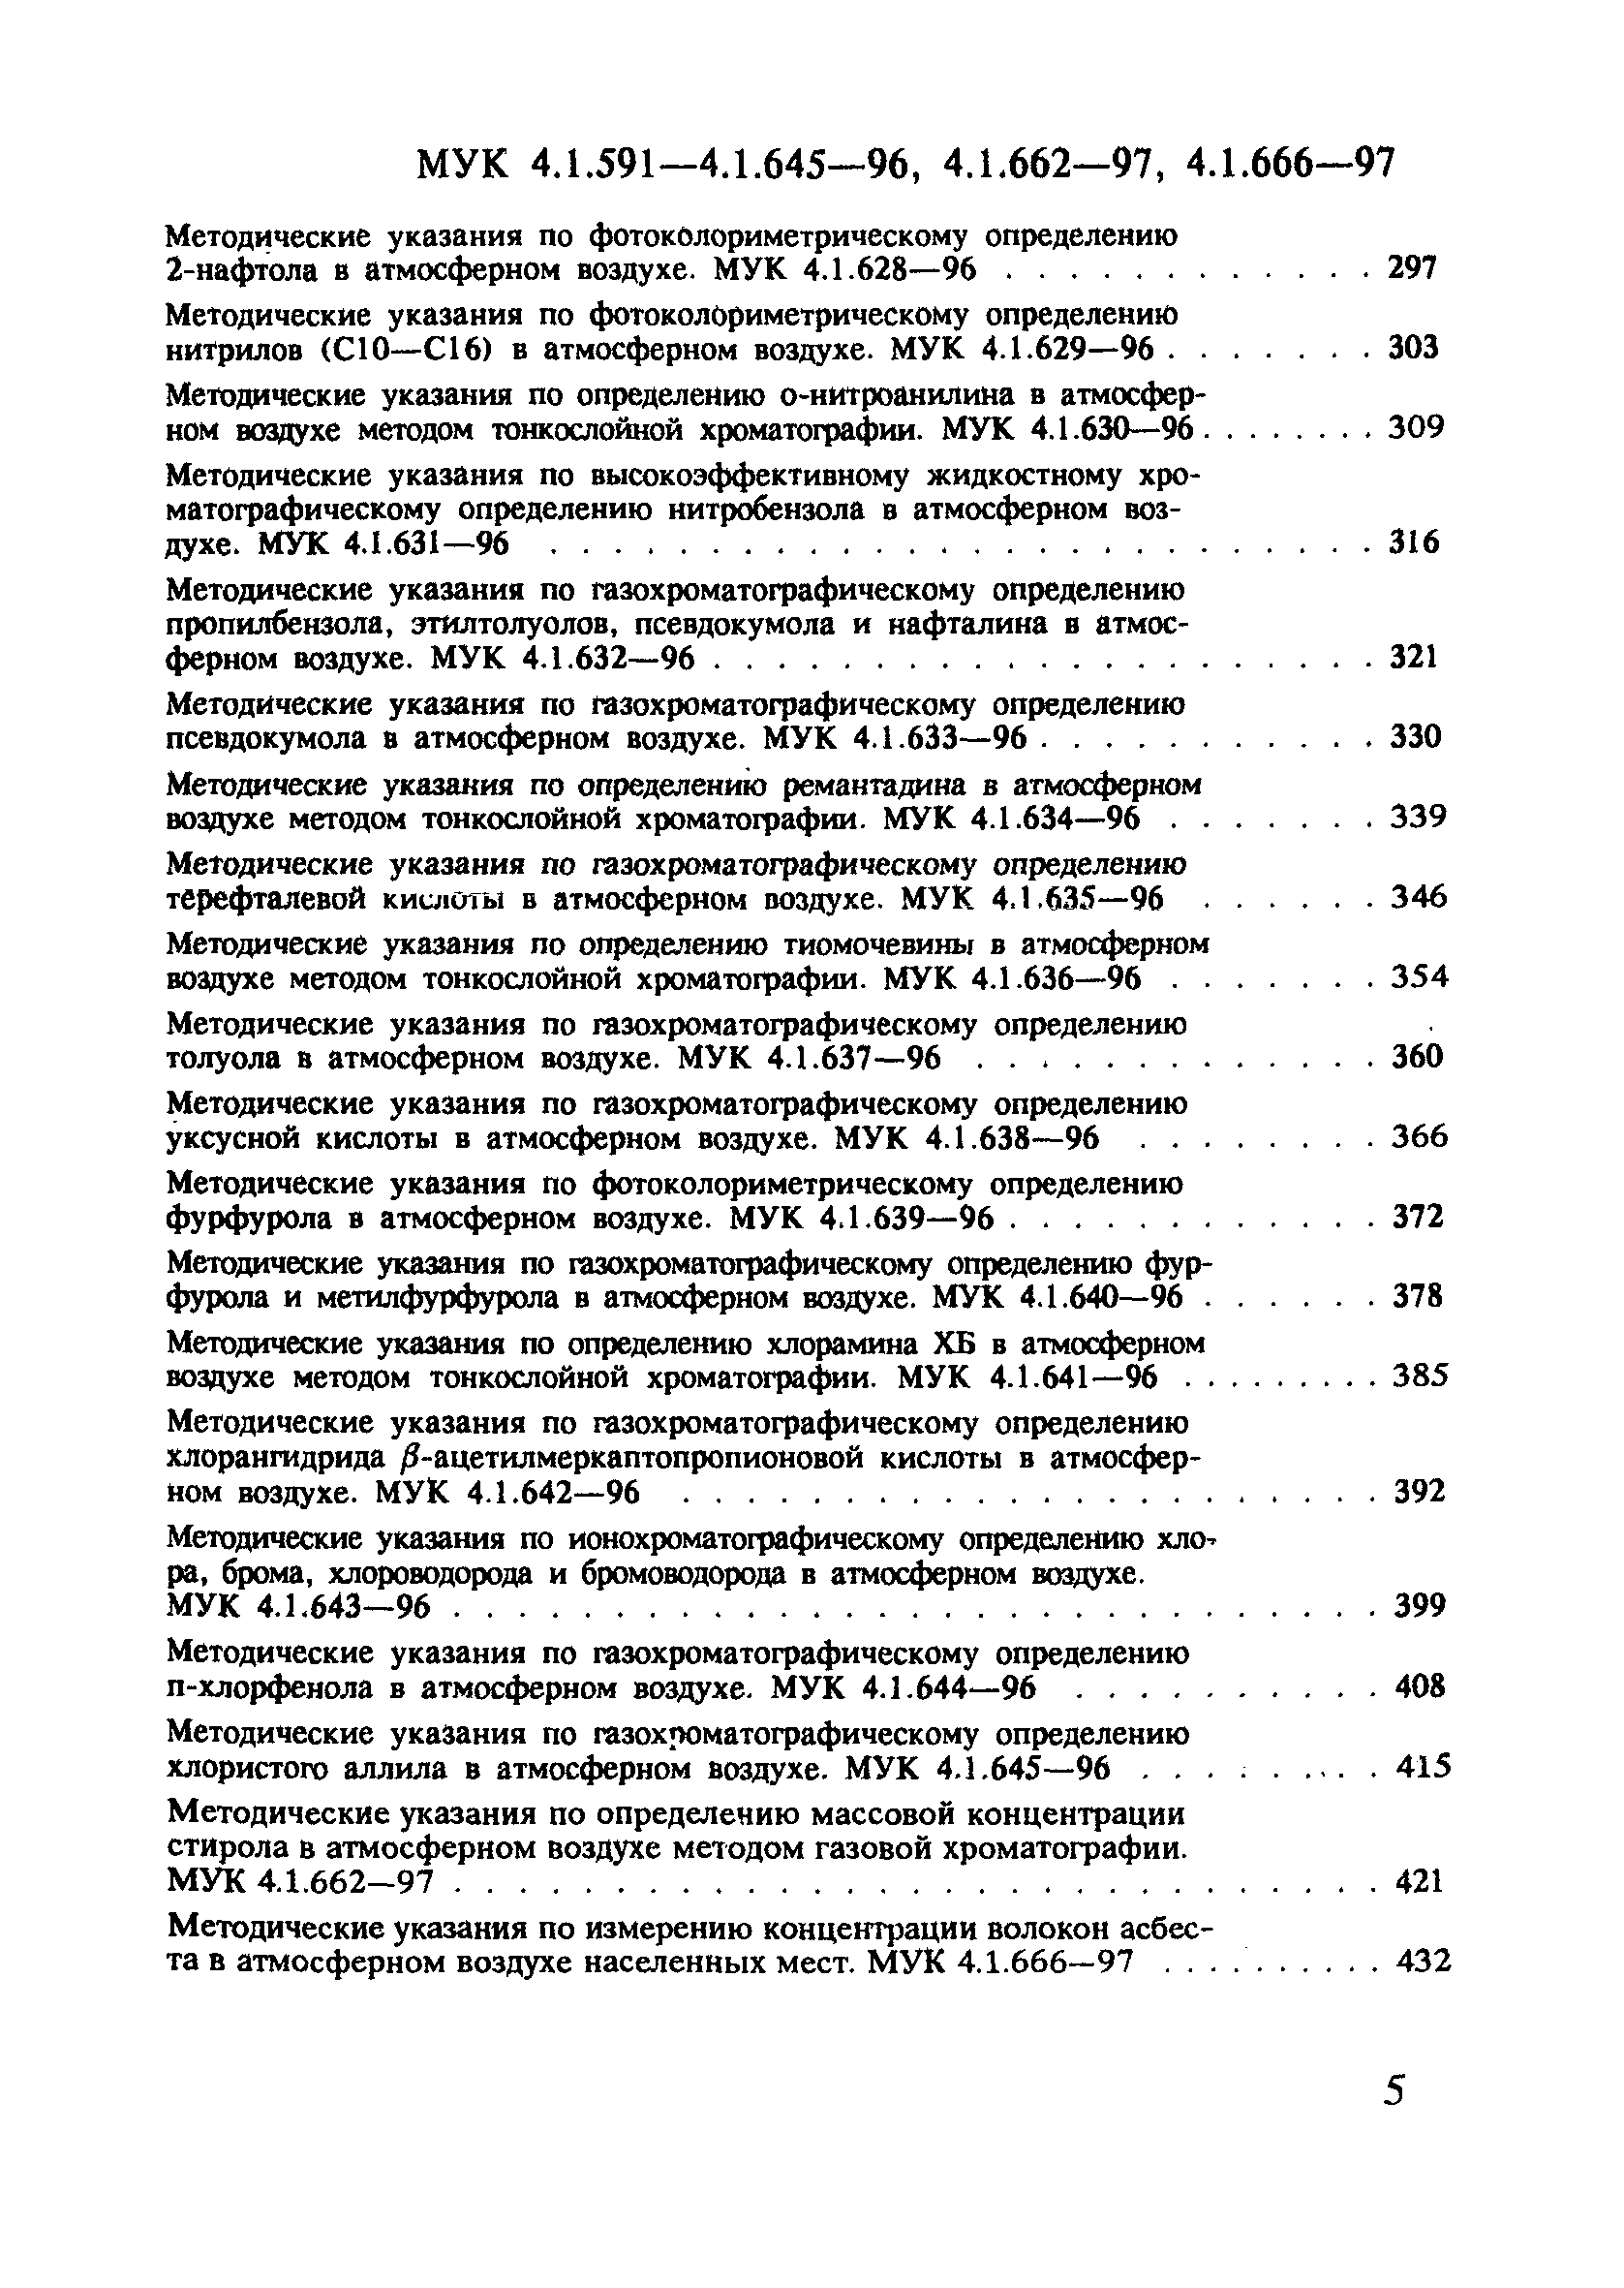 МУК 4.1.636-96